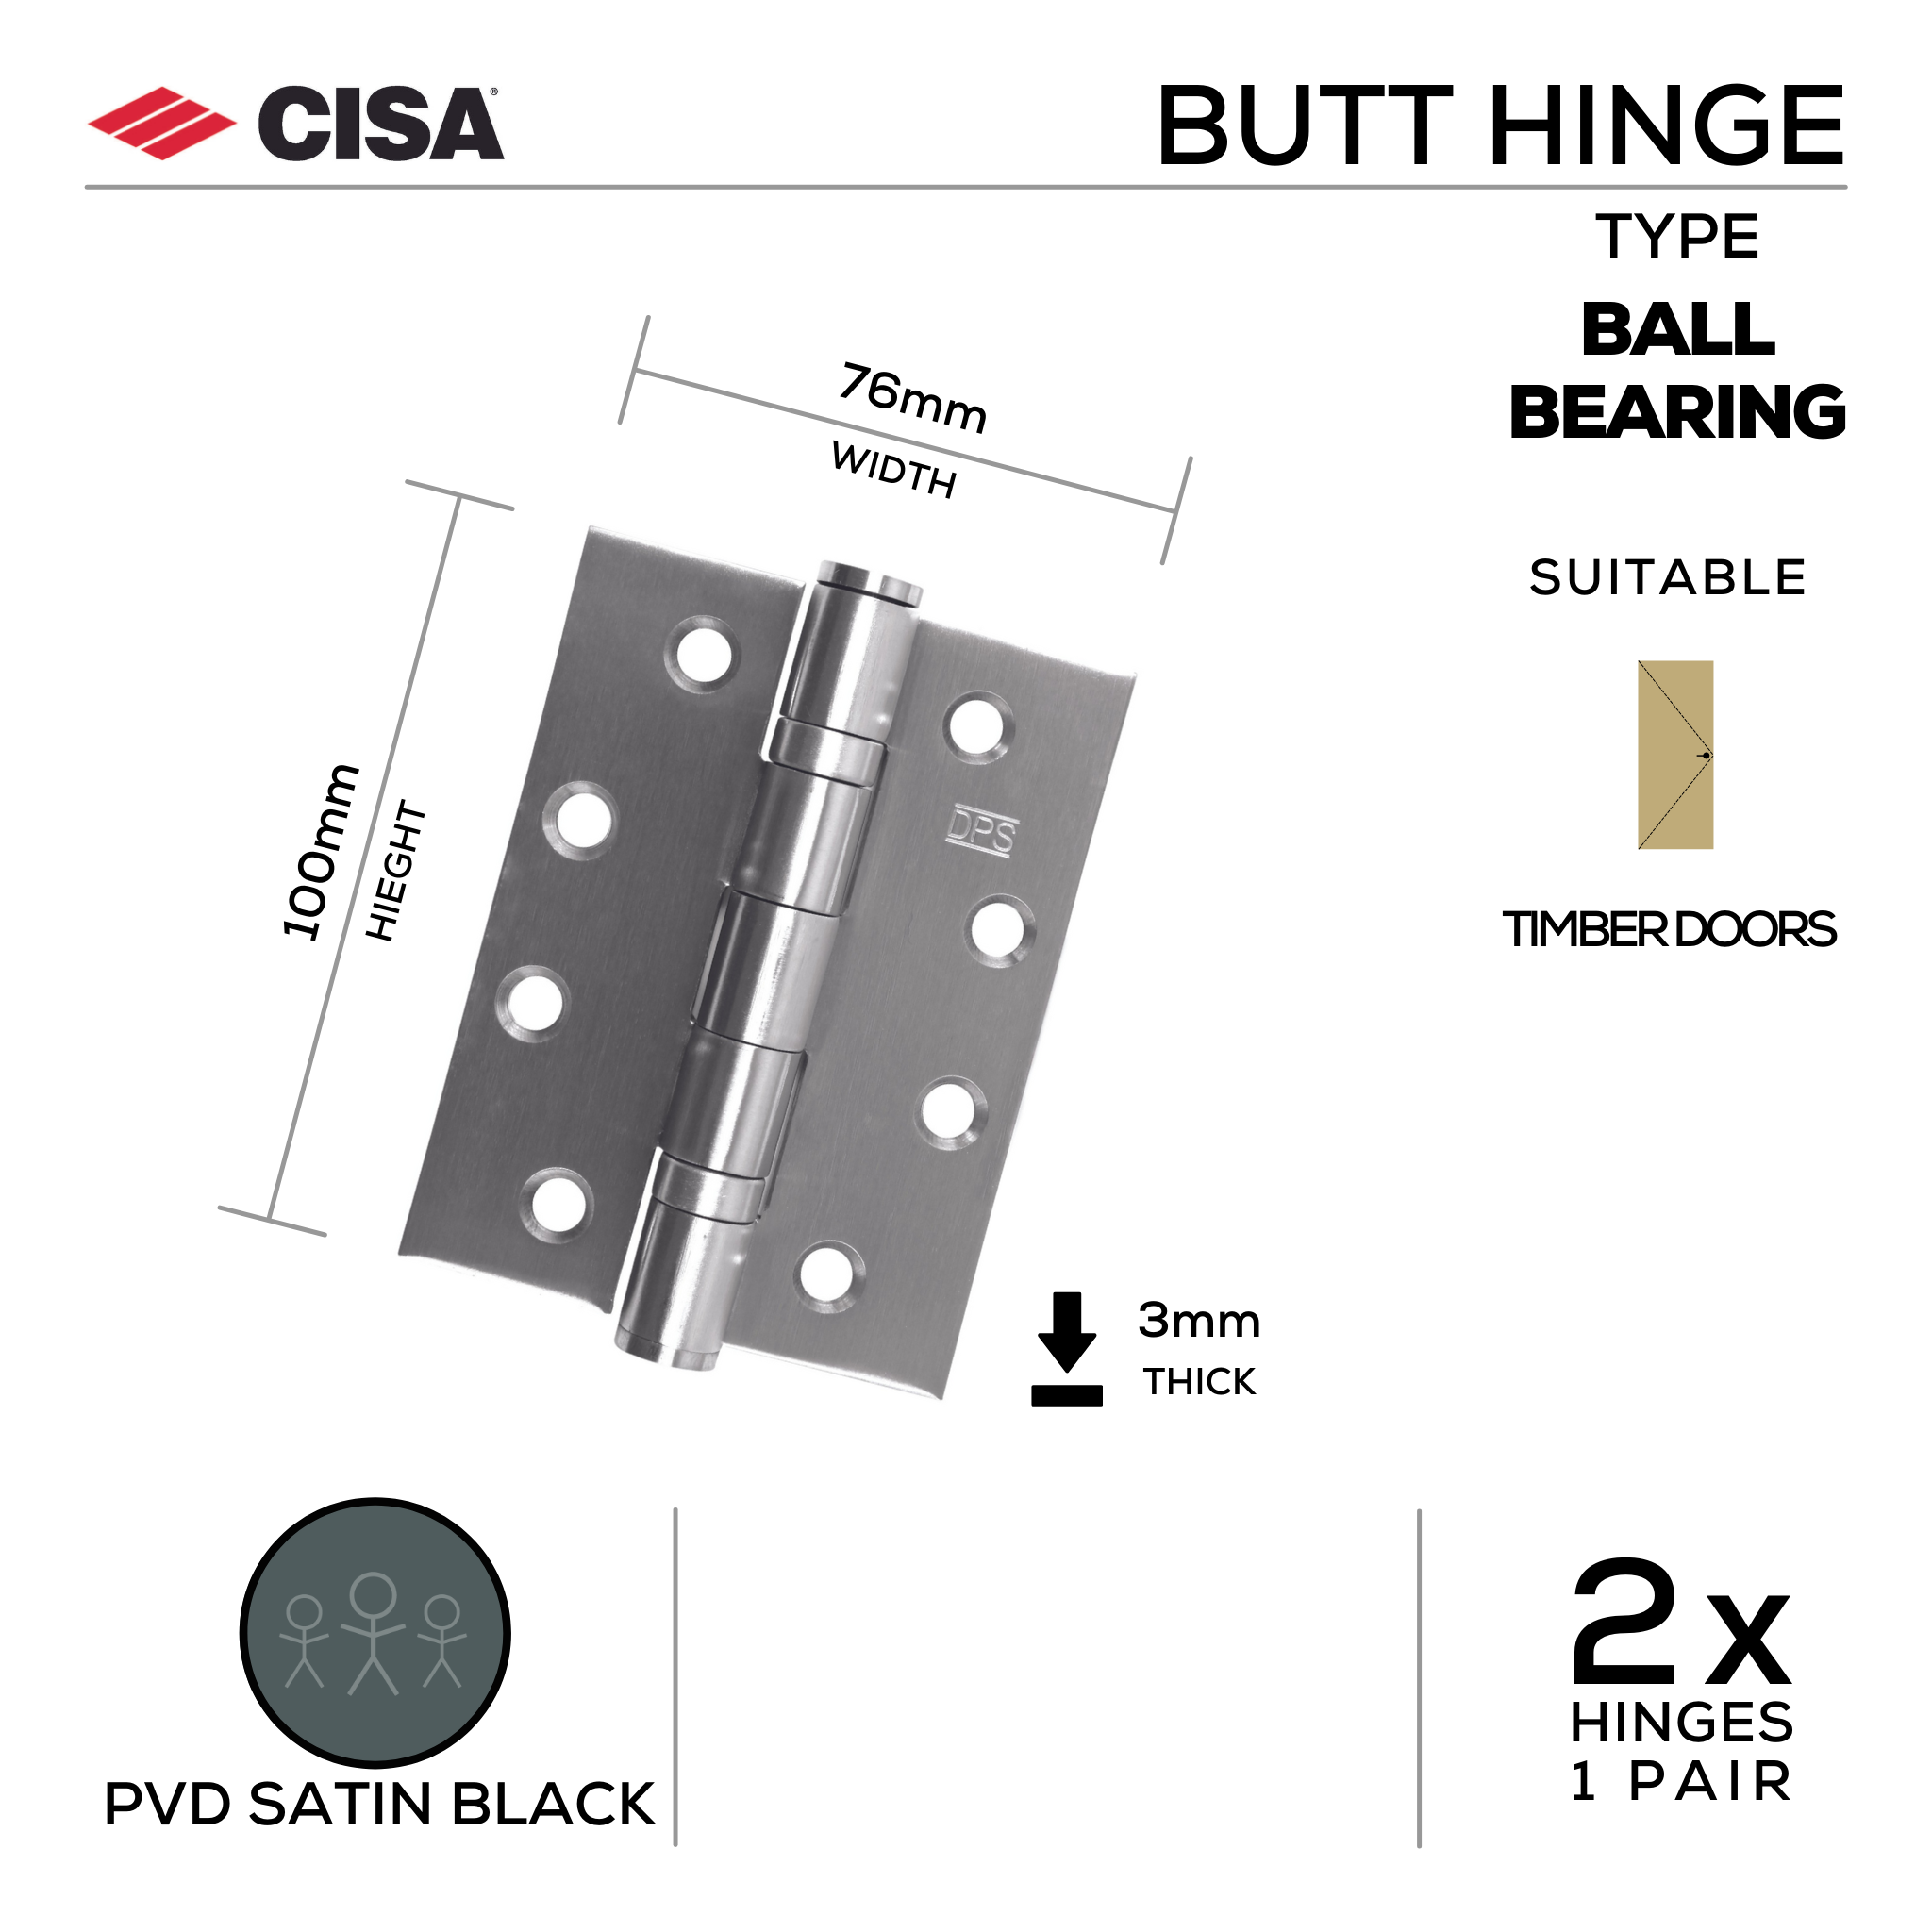 FH76X3B-SBL, Butt Hinge, Double Ball Bearing, 2 x Hinges (1 Pair), 100mm (h) x 76mm (w) x 3mm (t), PVD Satin Black, CISA